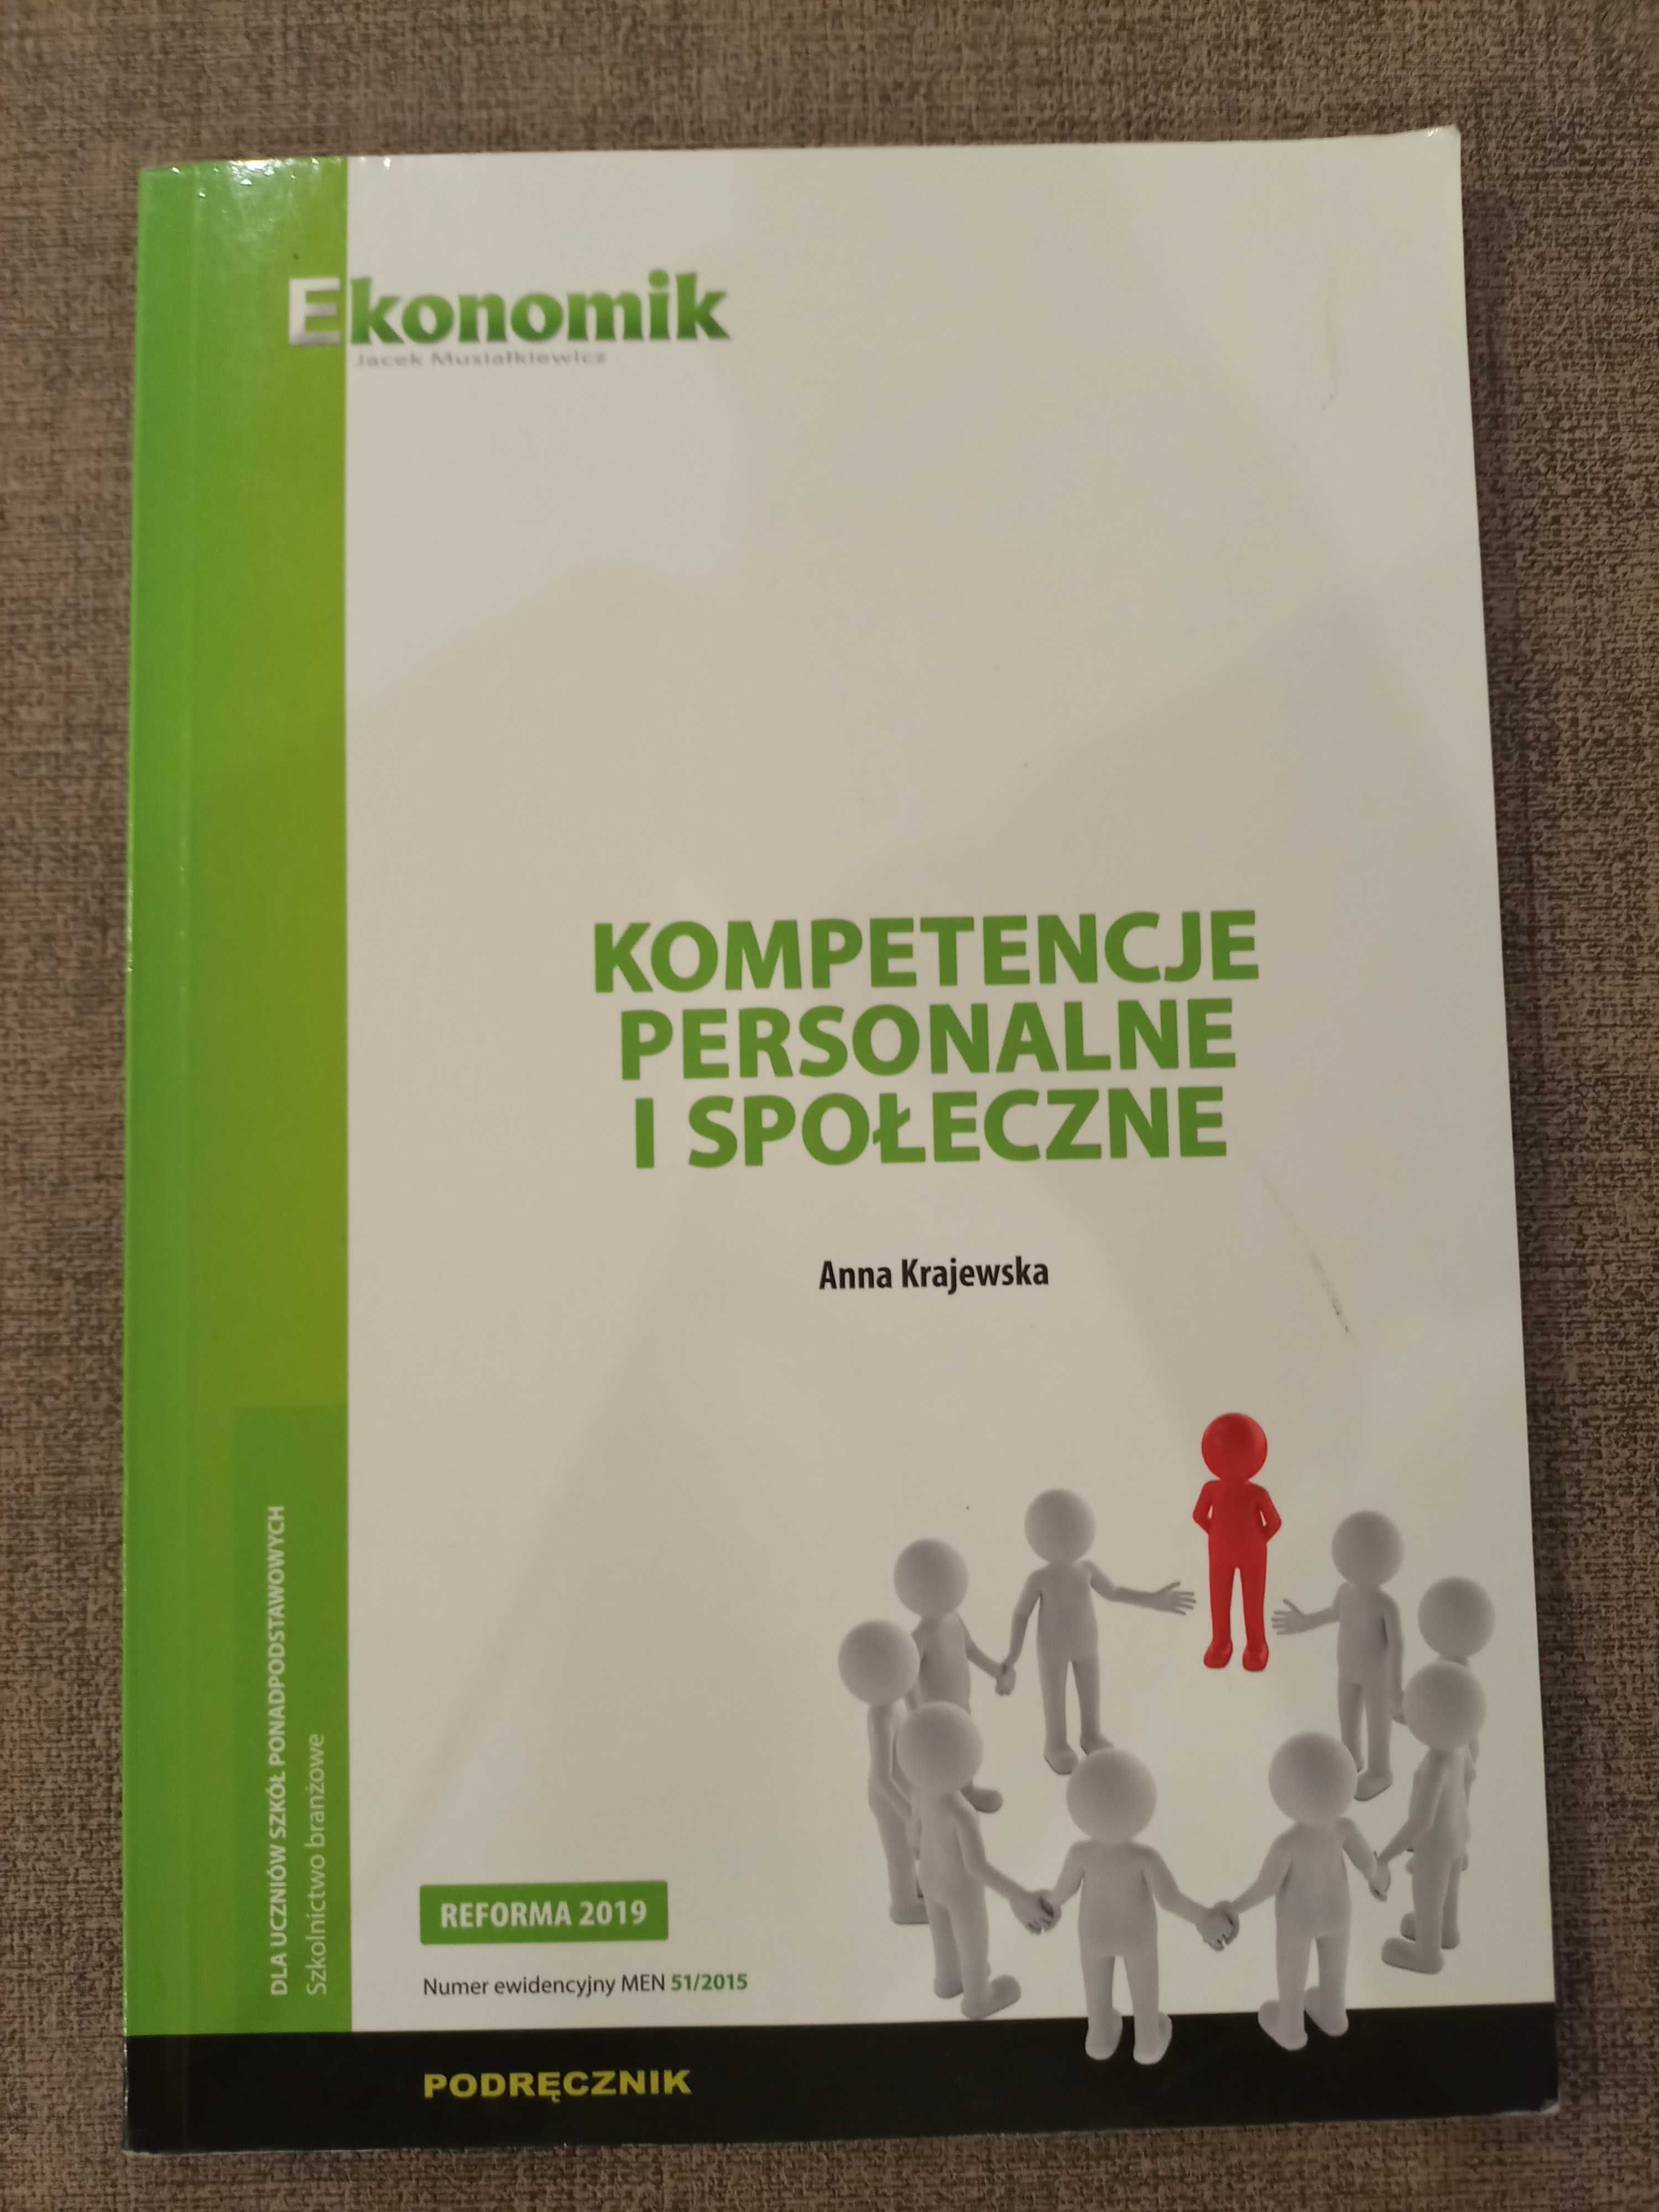 Podręcznik Ekonomik Kompetencje personalne i społeczne